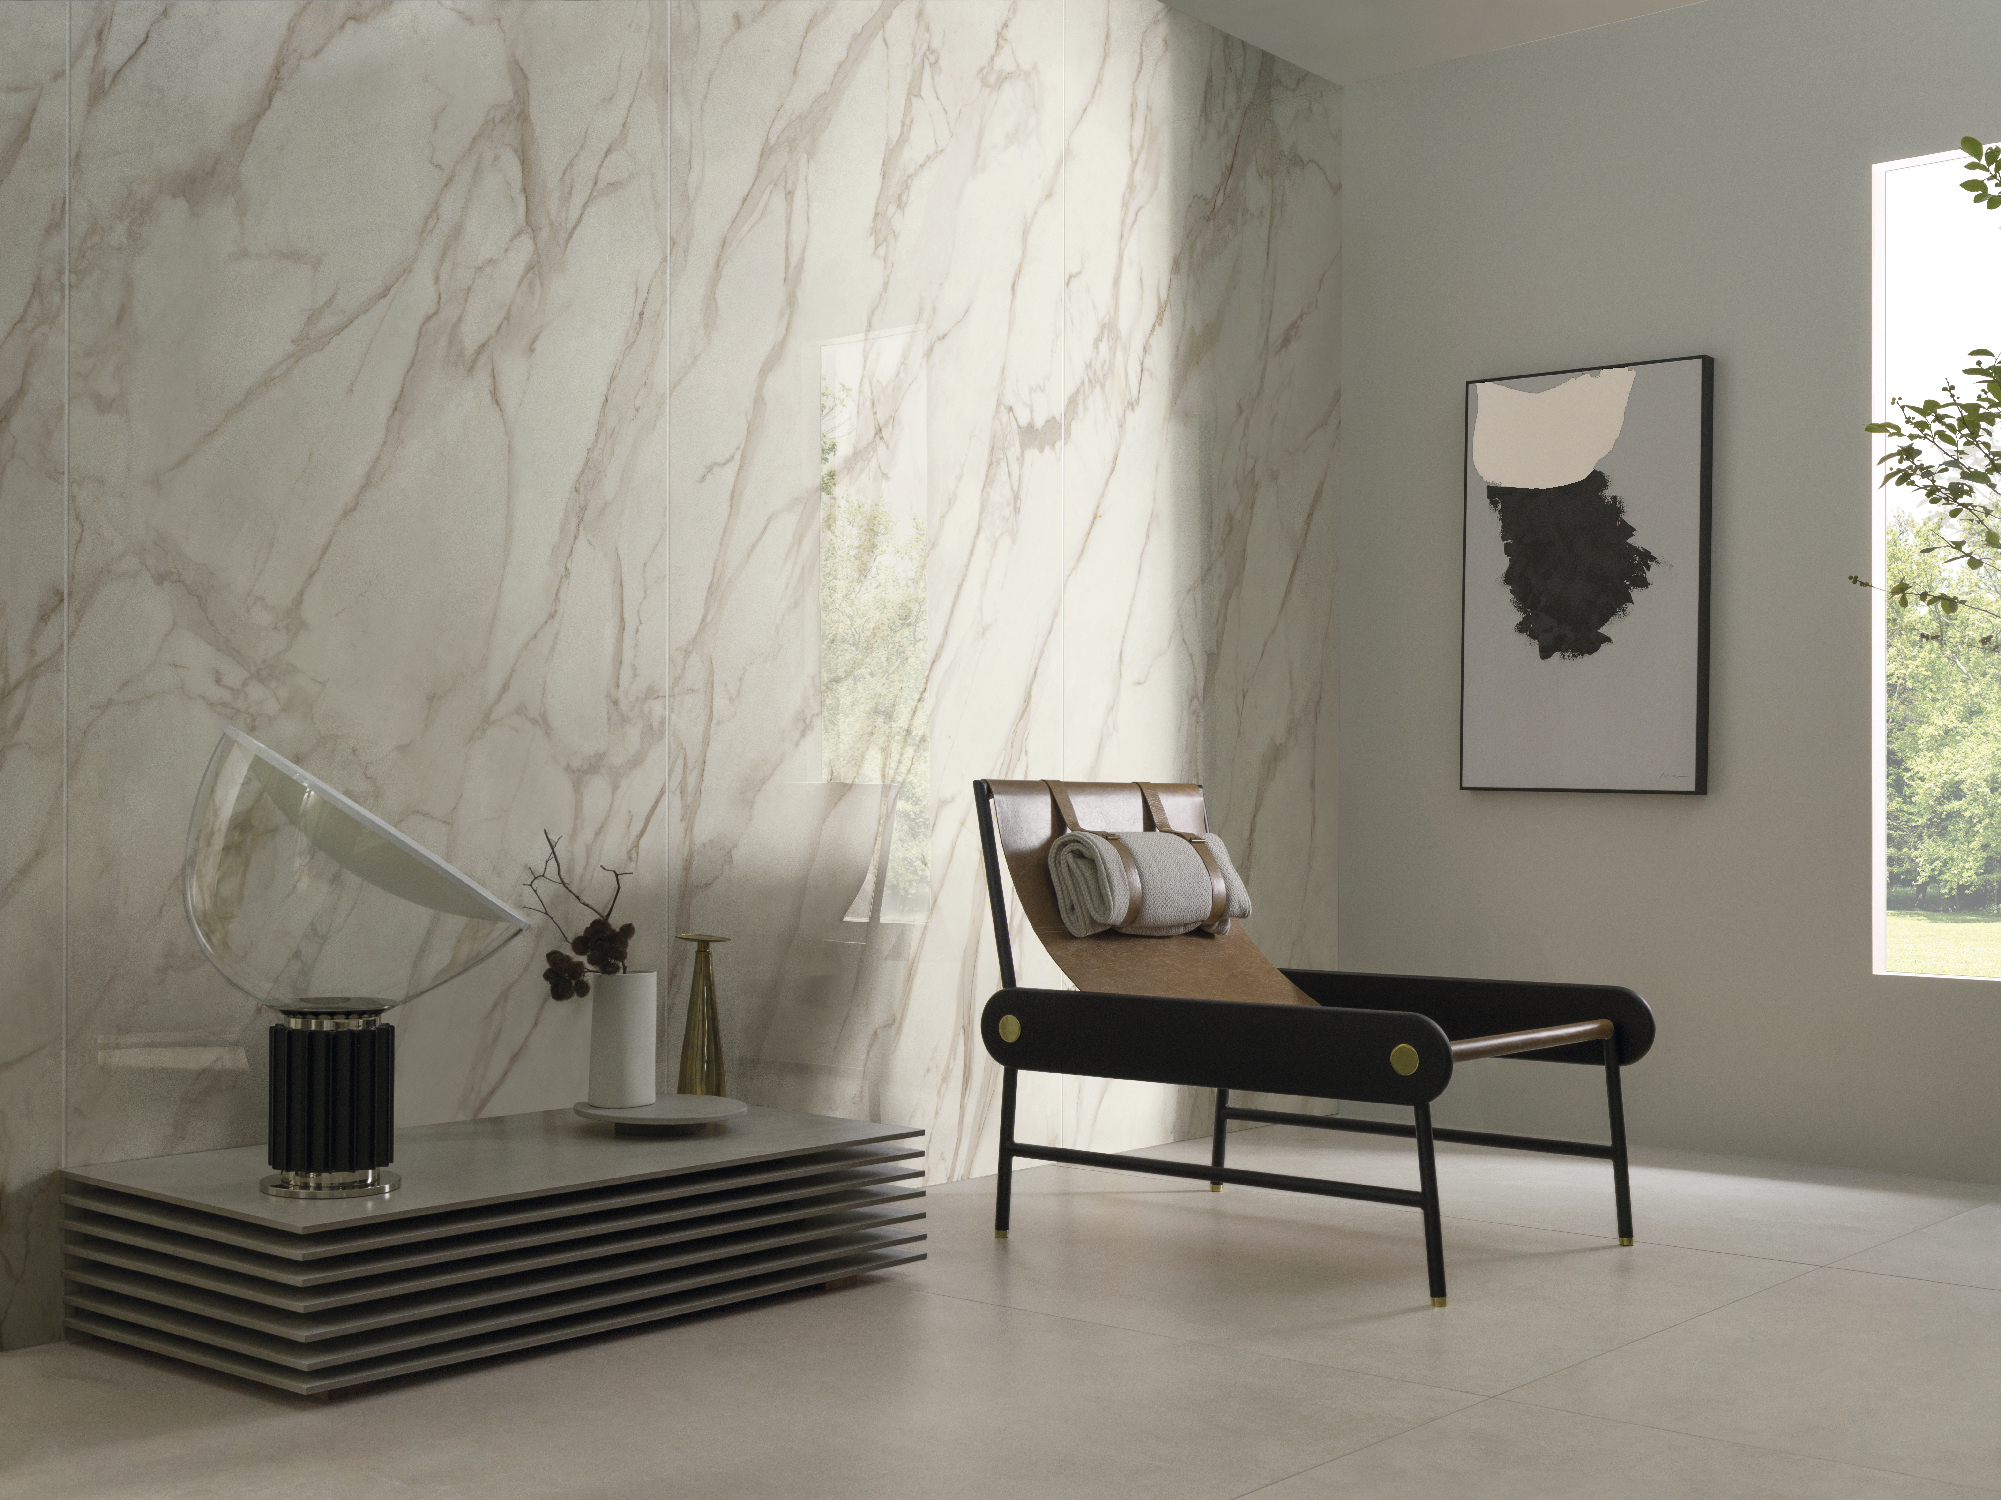 O painel de porcelanato que recria mármore é uma alternativa sustentável, com inúmeros benefícios para decorar a sua casa, como essas lindas lastras no Bianco di Lucca, da Portobello